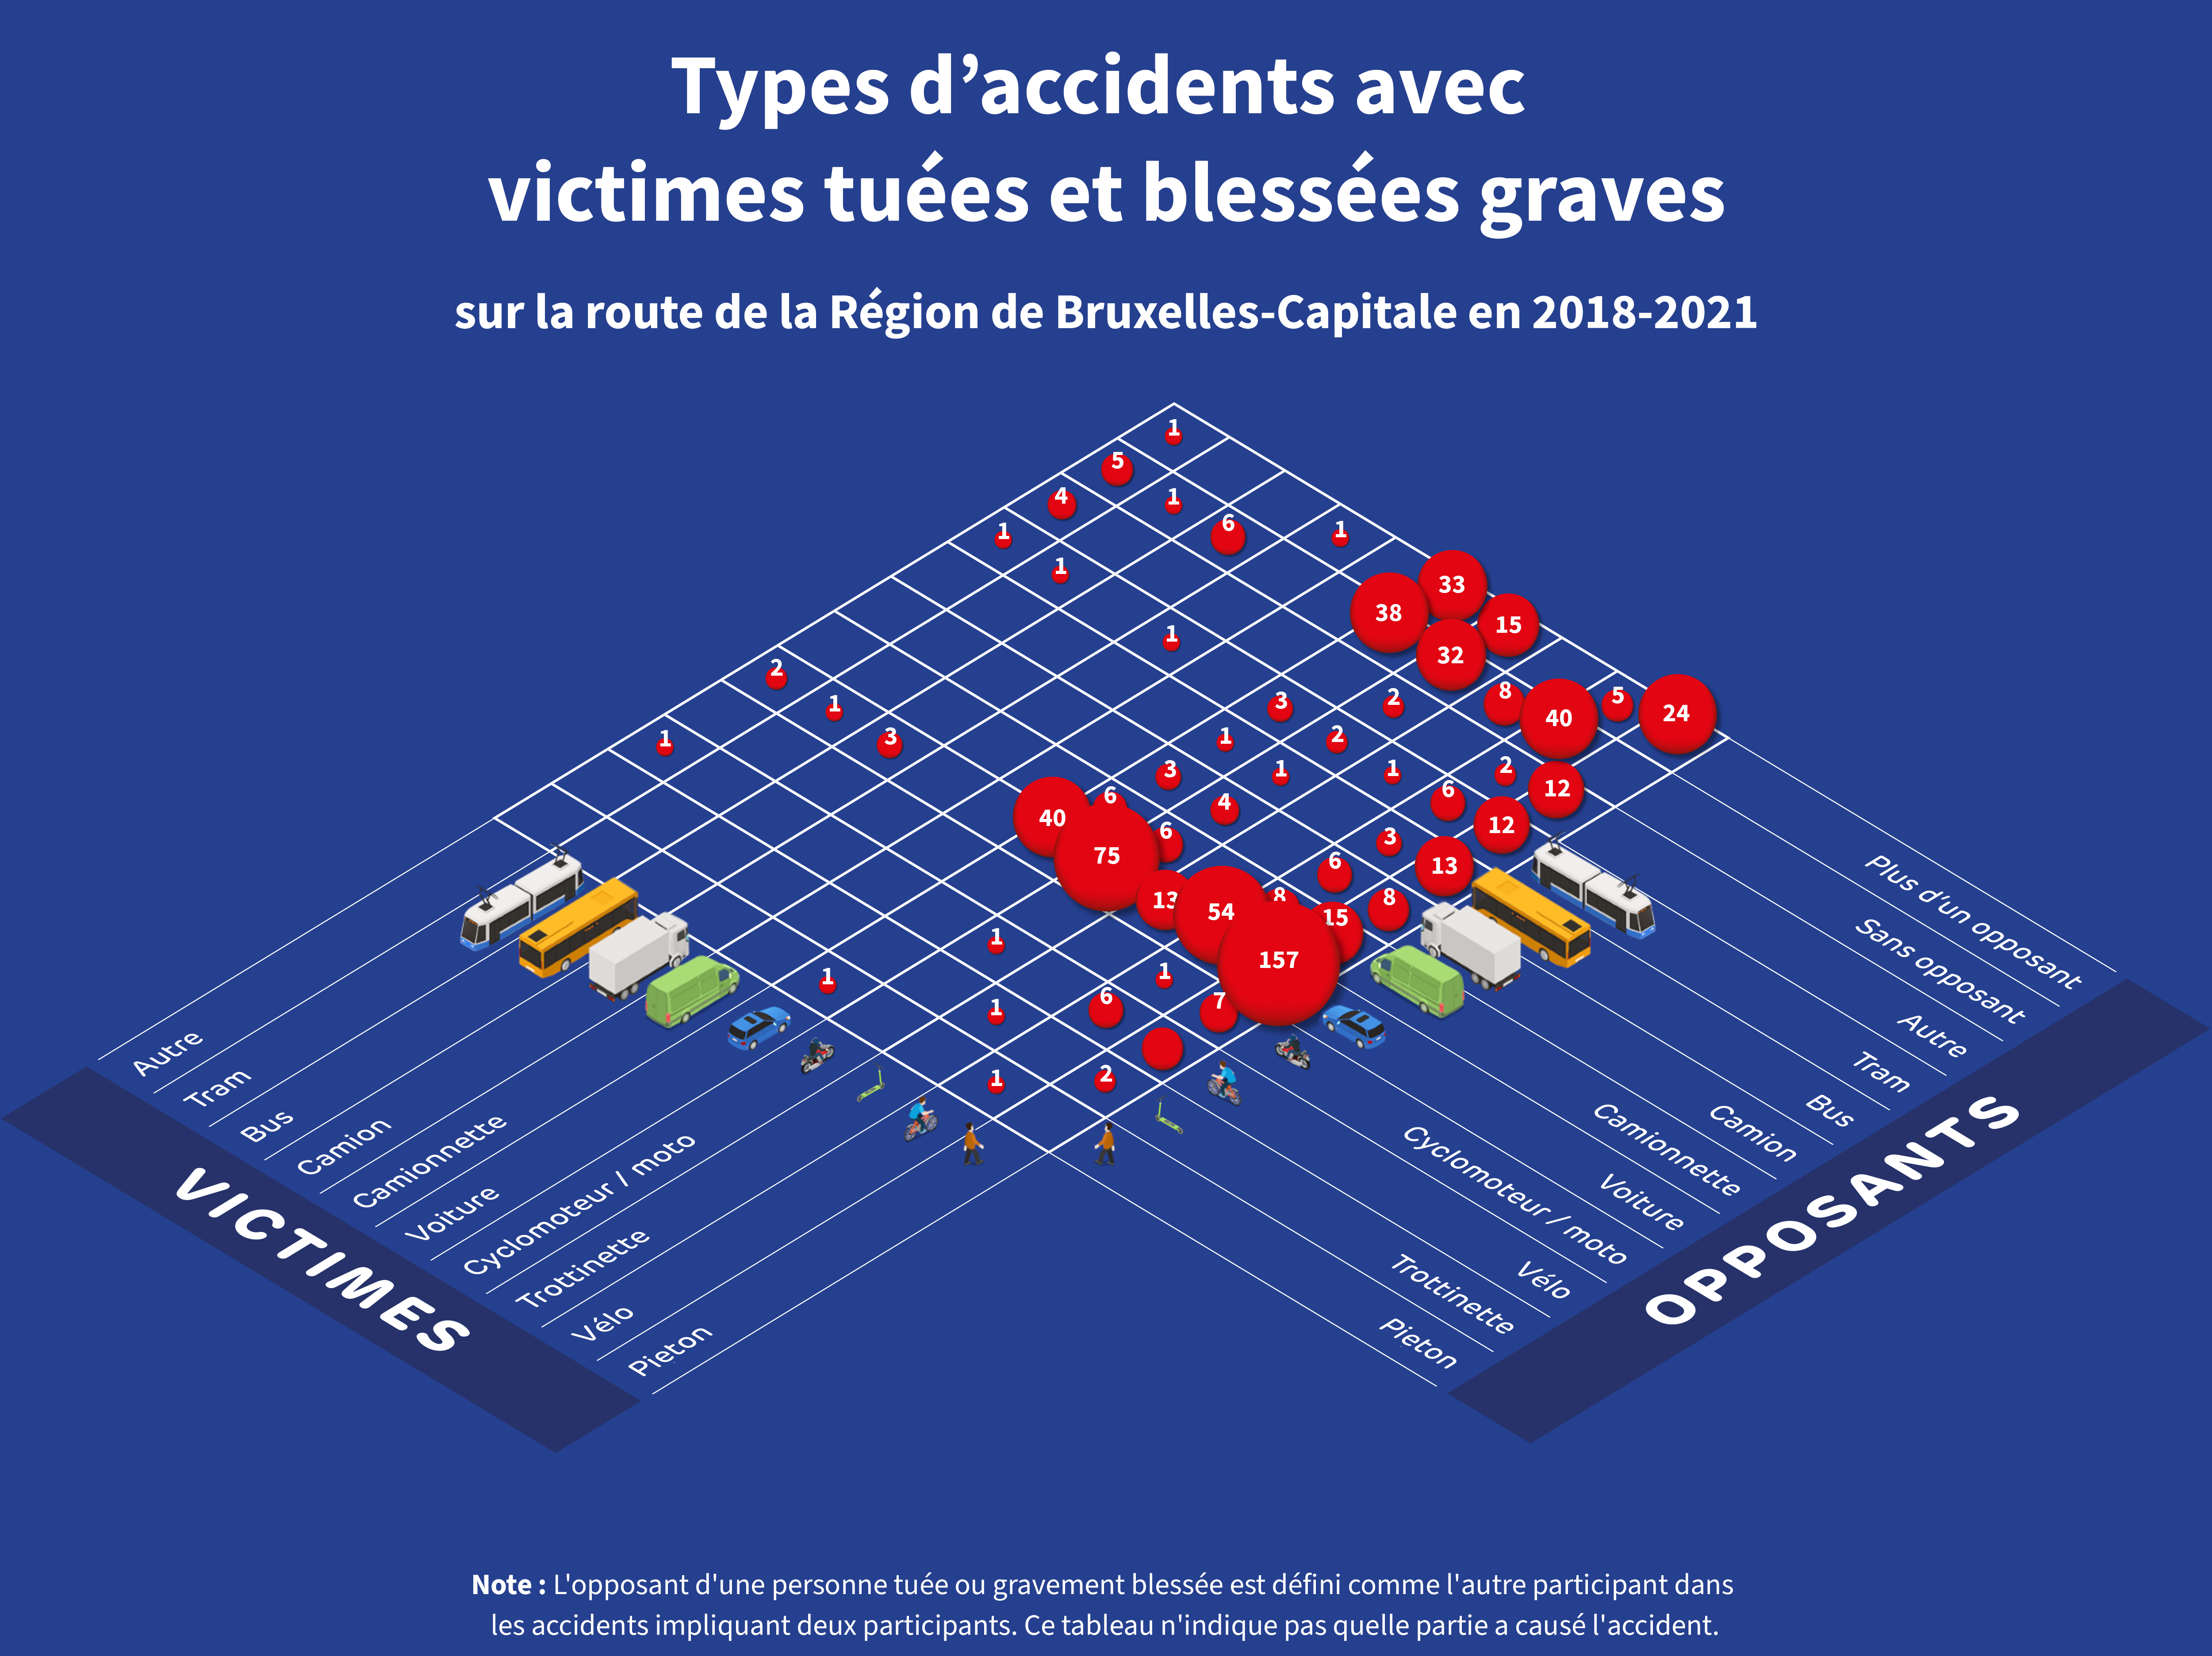 Matrice : le nombre de victimes tuées et blessées graves par types d'accidents